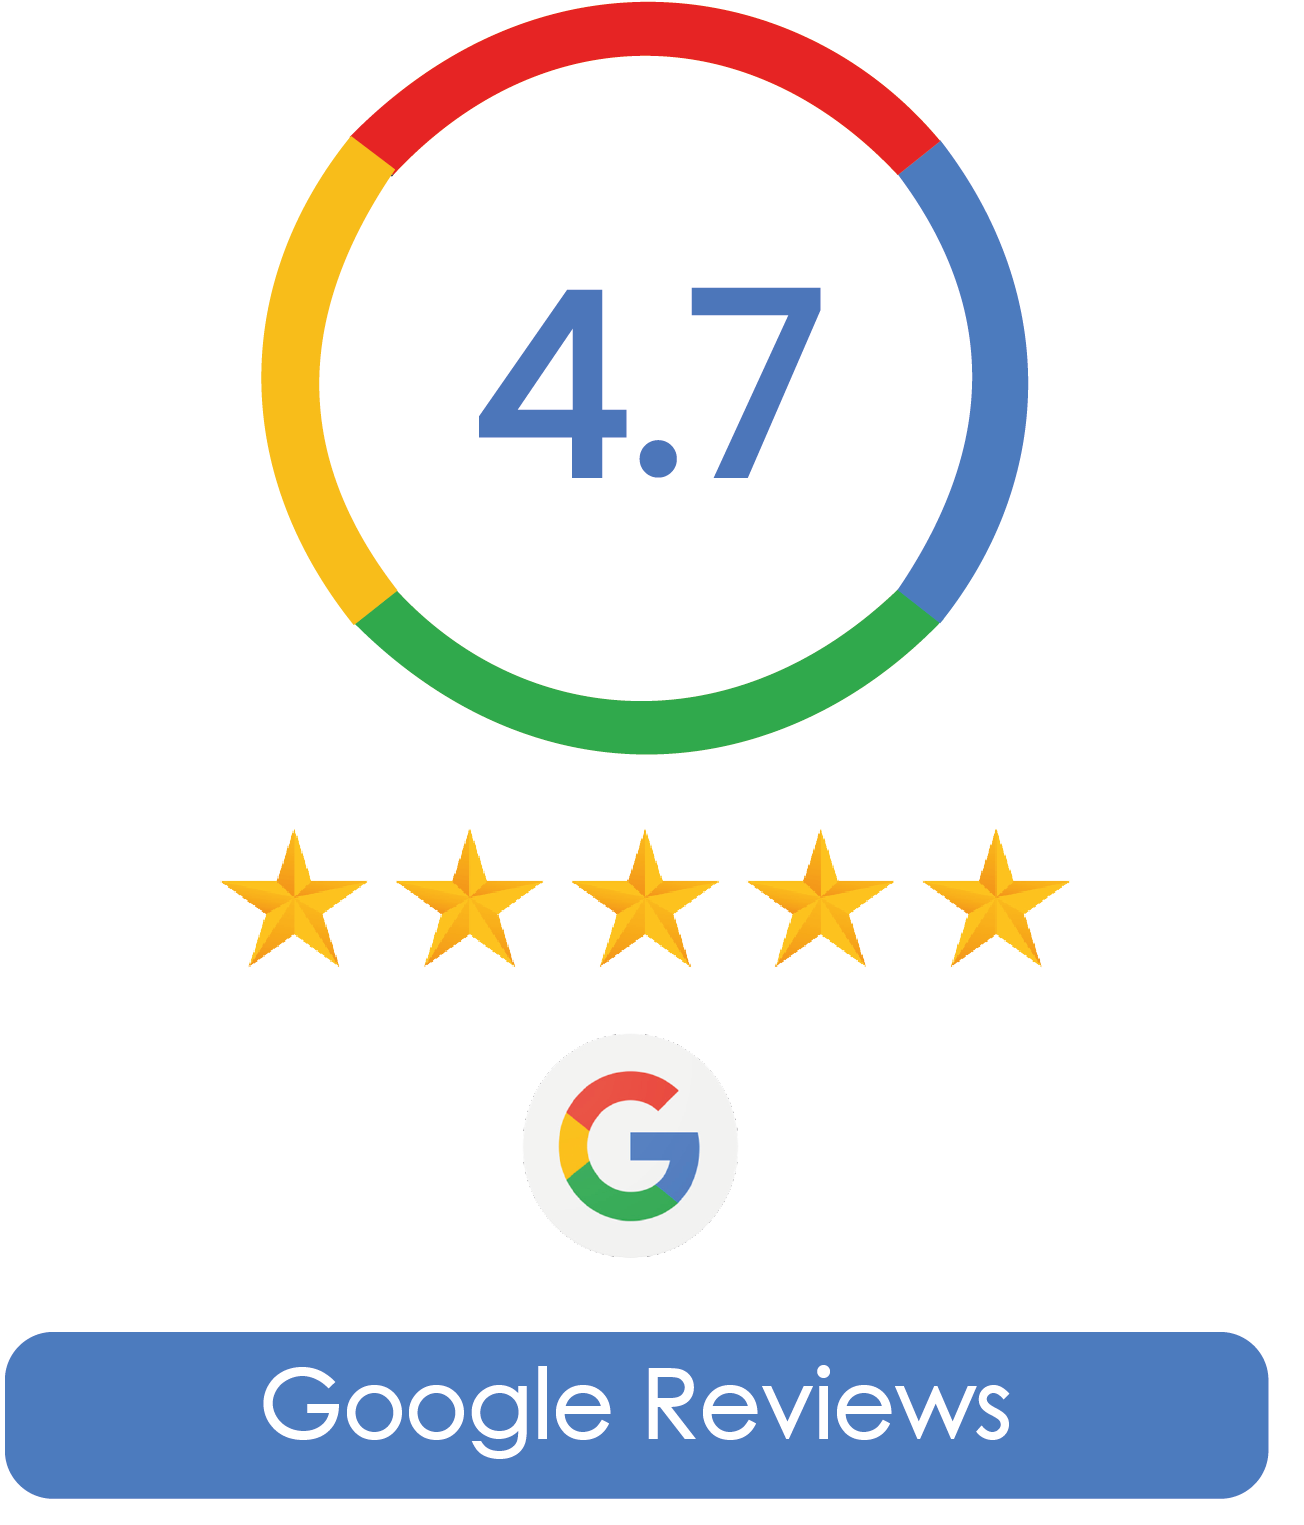 google-reviews-auraskinclinic